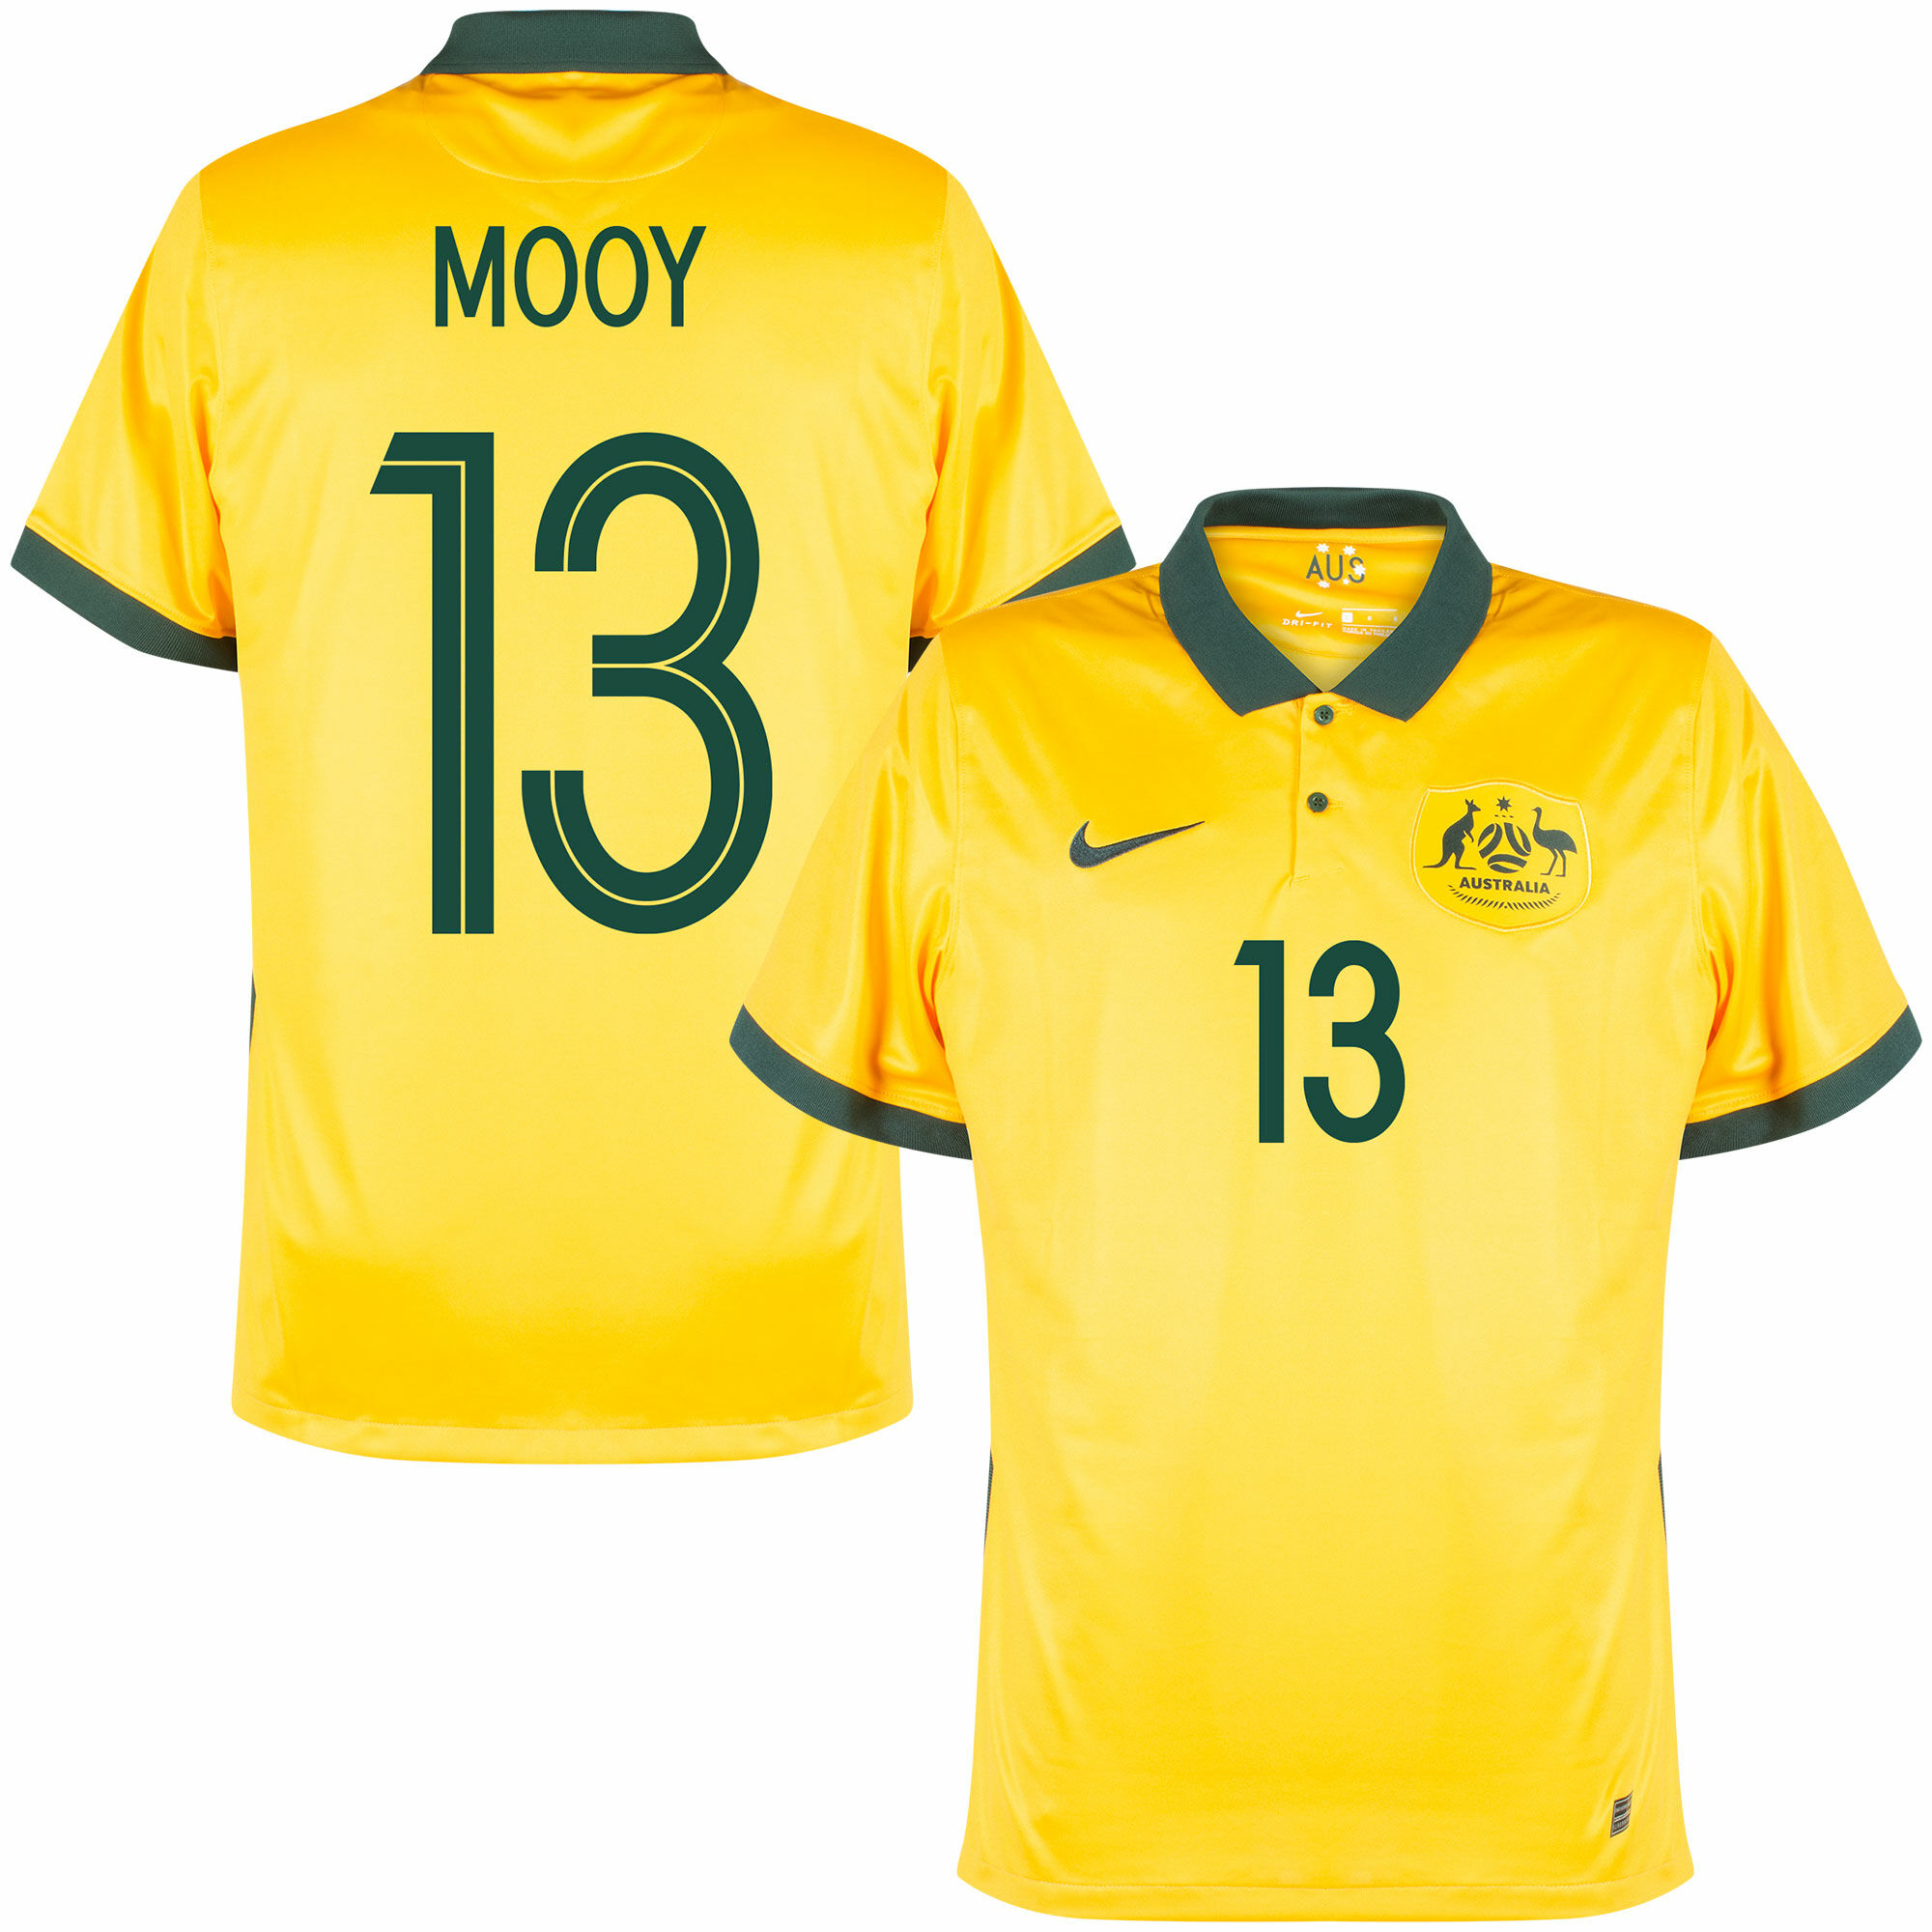 Austrálie - Dres fotbalový - fan potisk, sezóna 2020/21, žlutý, domácí, Aaron Mooy, číslo 13